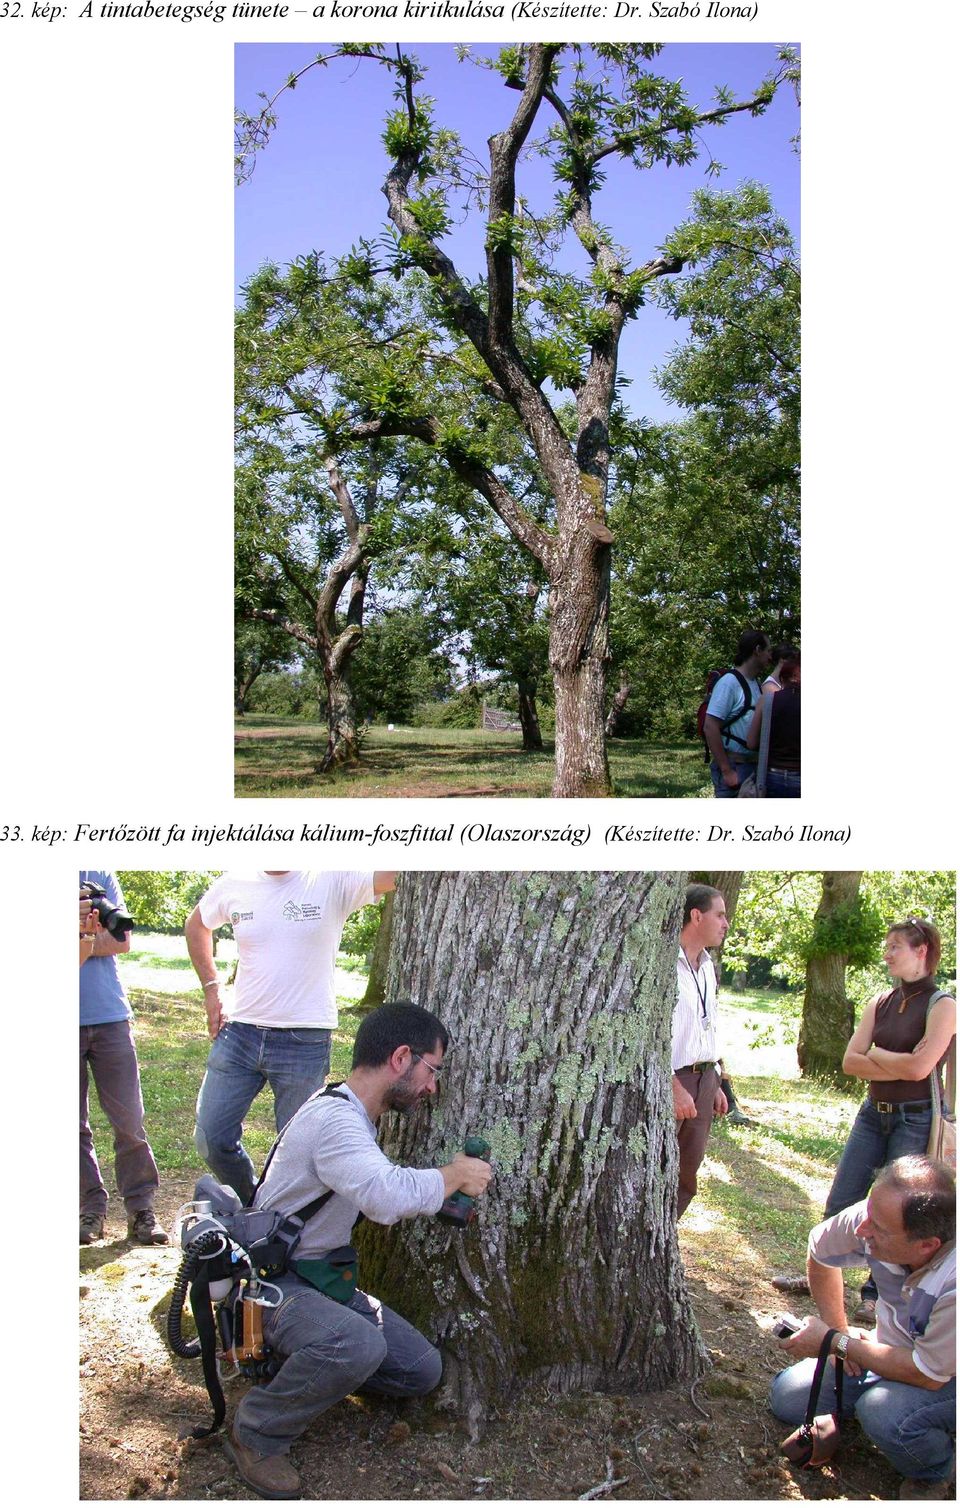 kép: Fertőzött fa injektálása